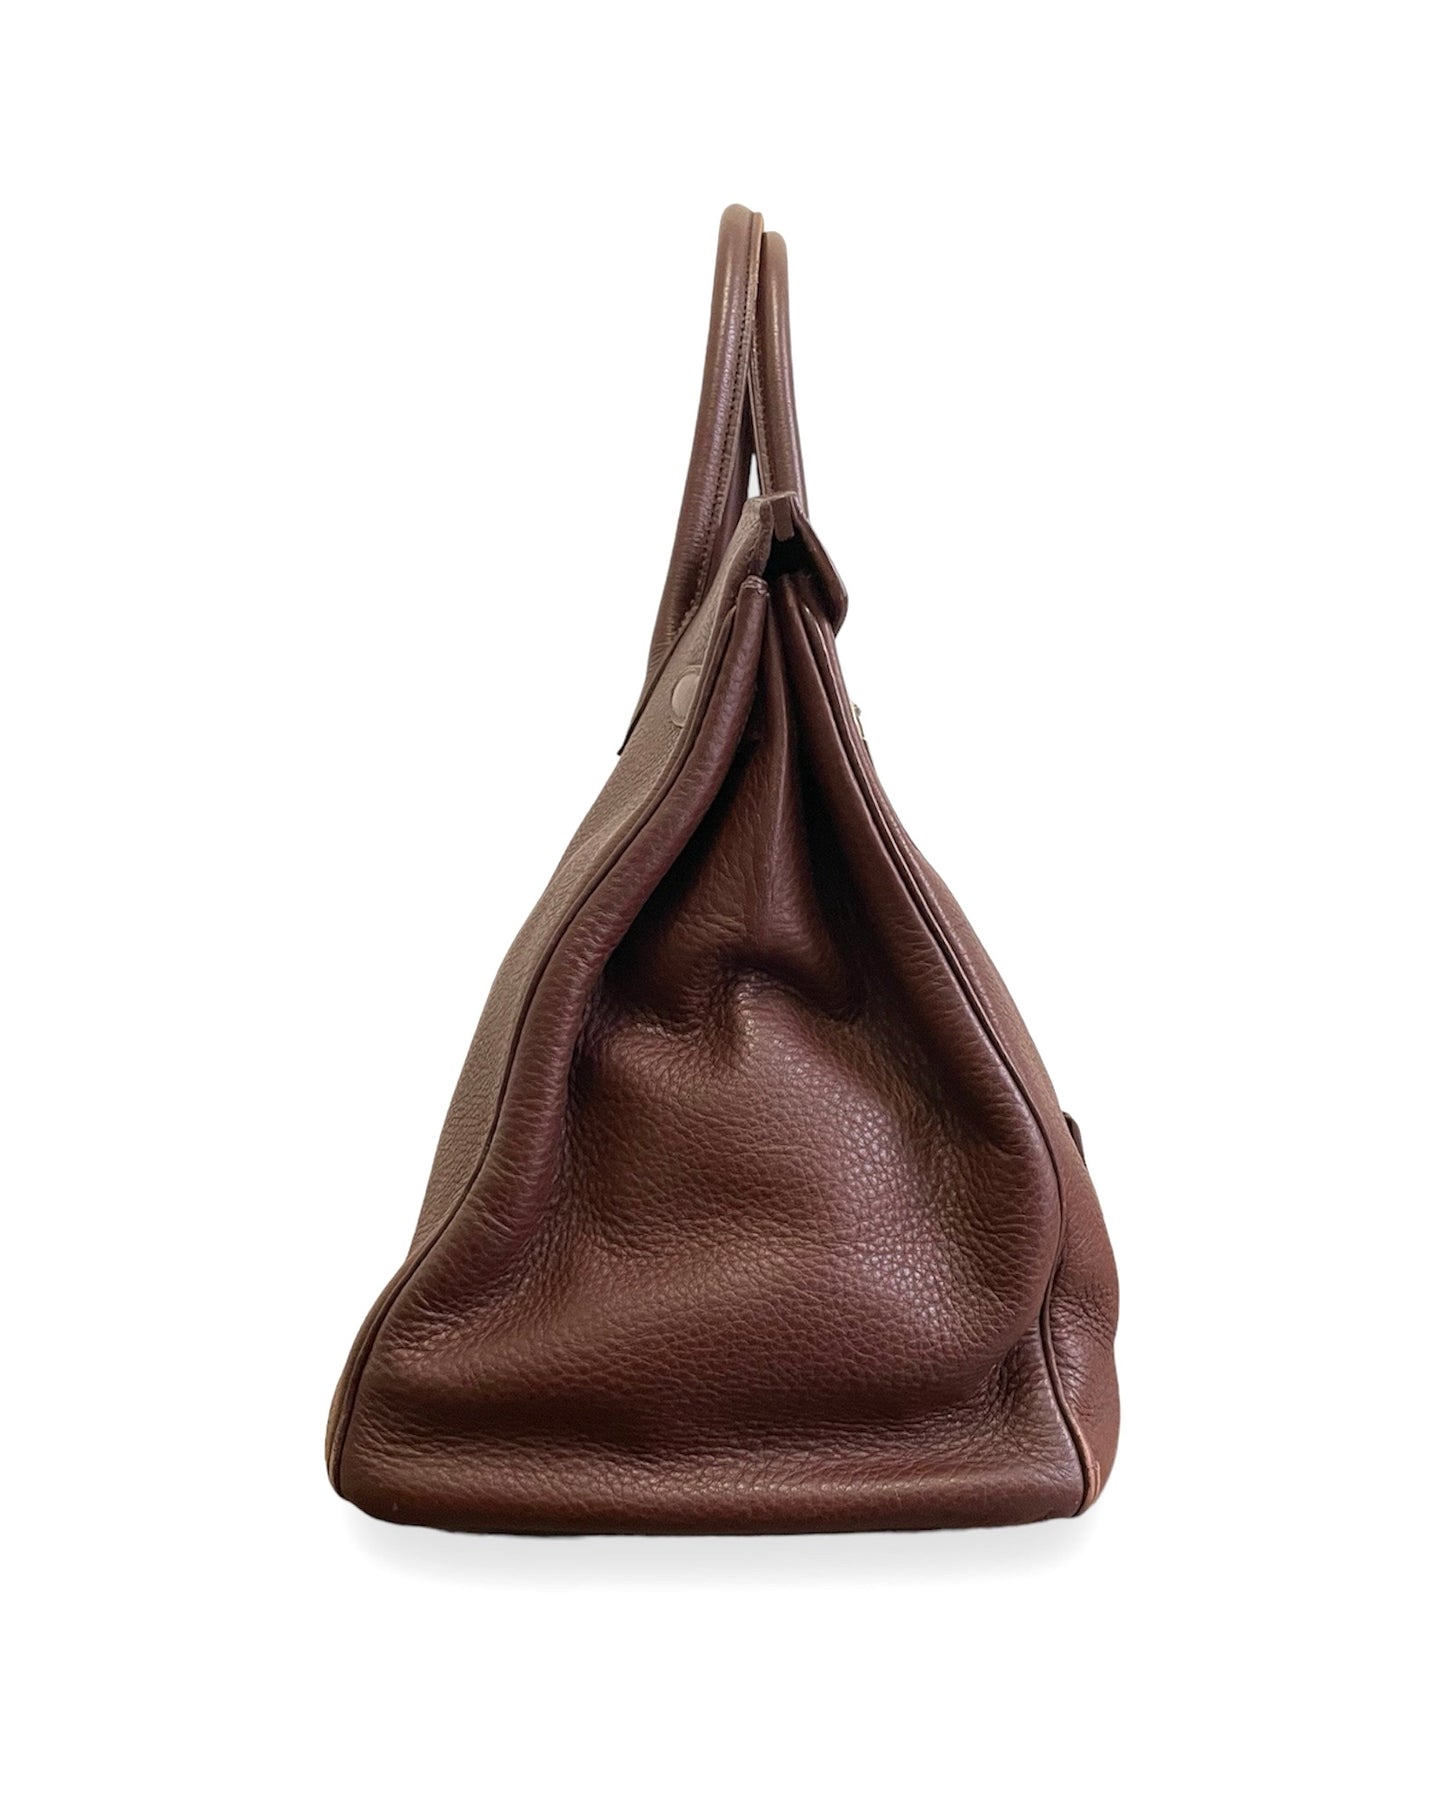 Sublime sac Hermès Birkin 40 en cuir togo cacao et sa bijouterie argentée. Dans un état exceptionnel. 